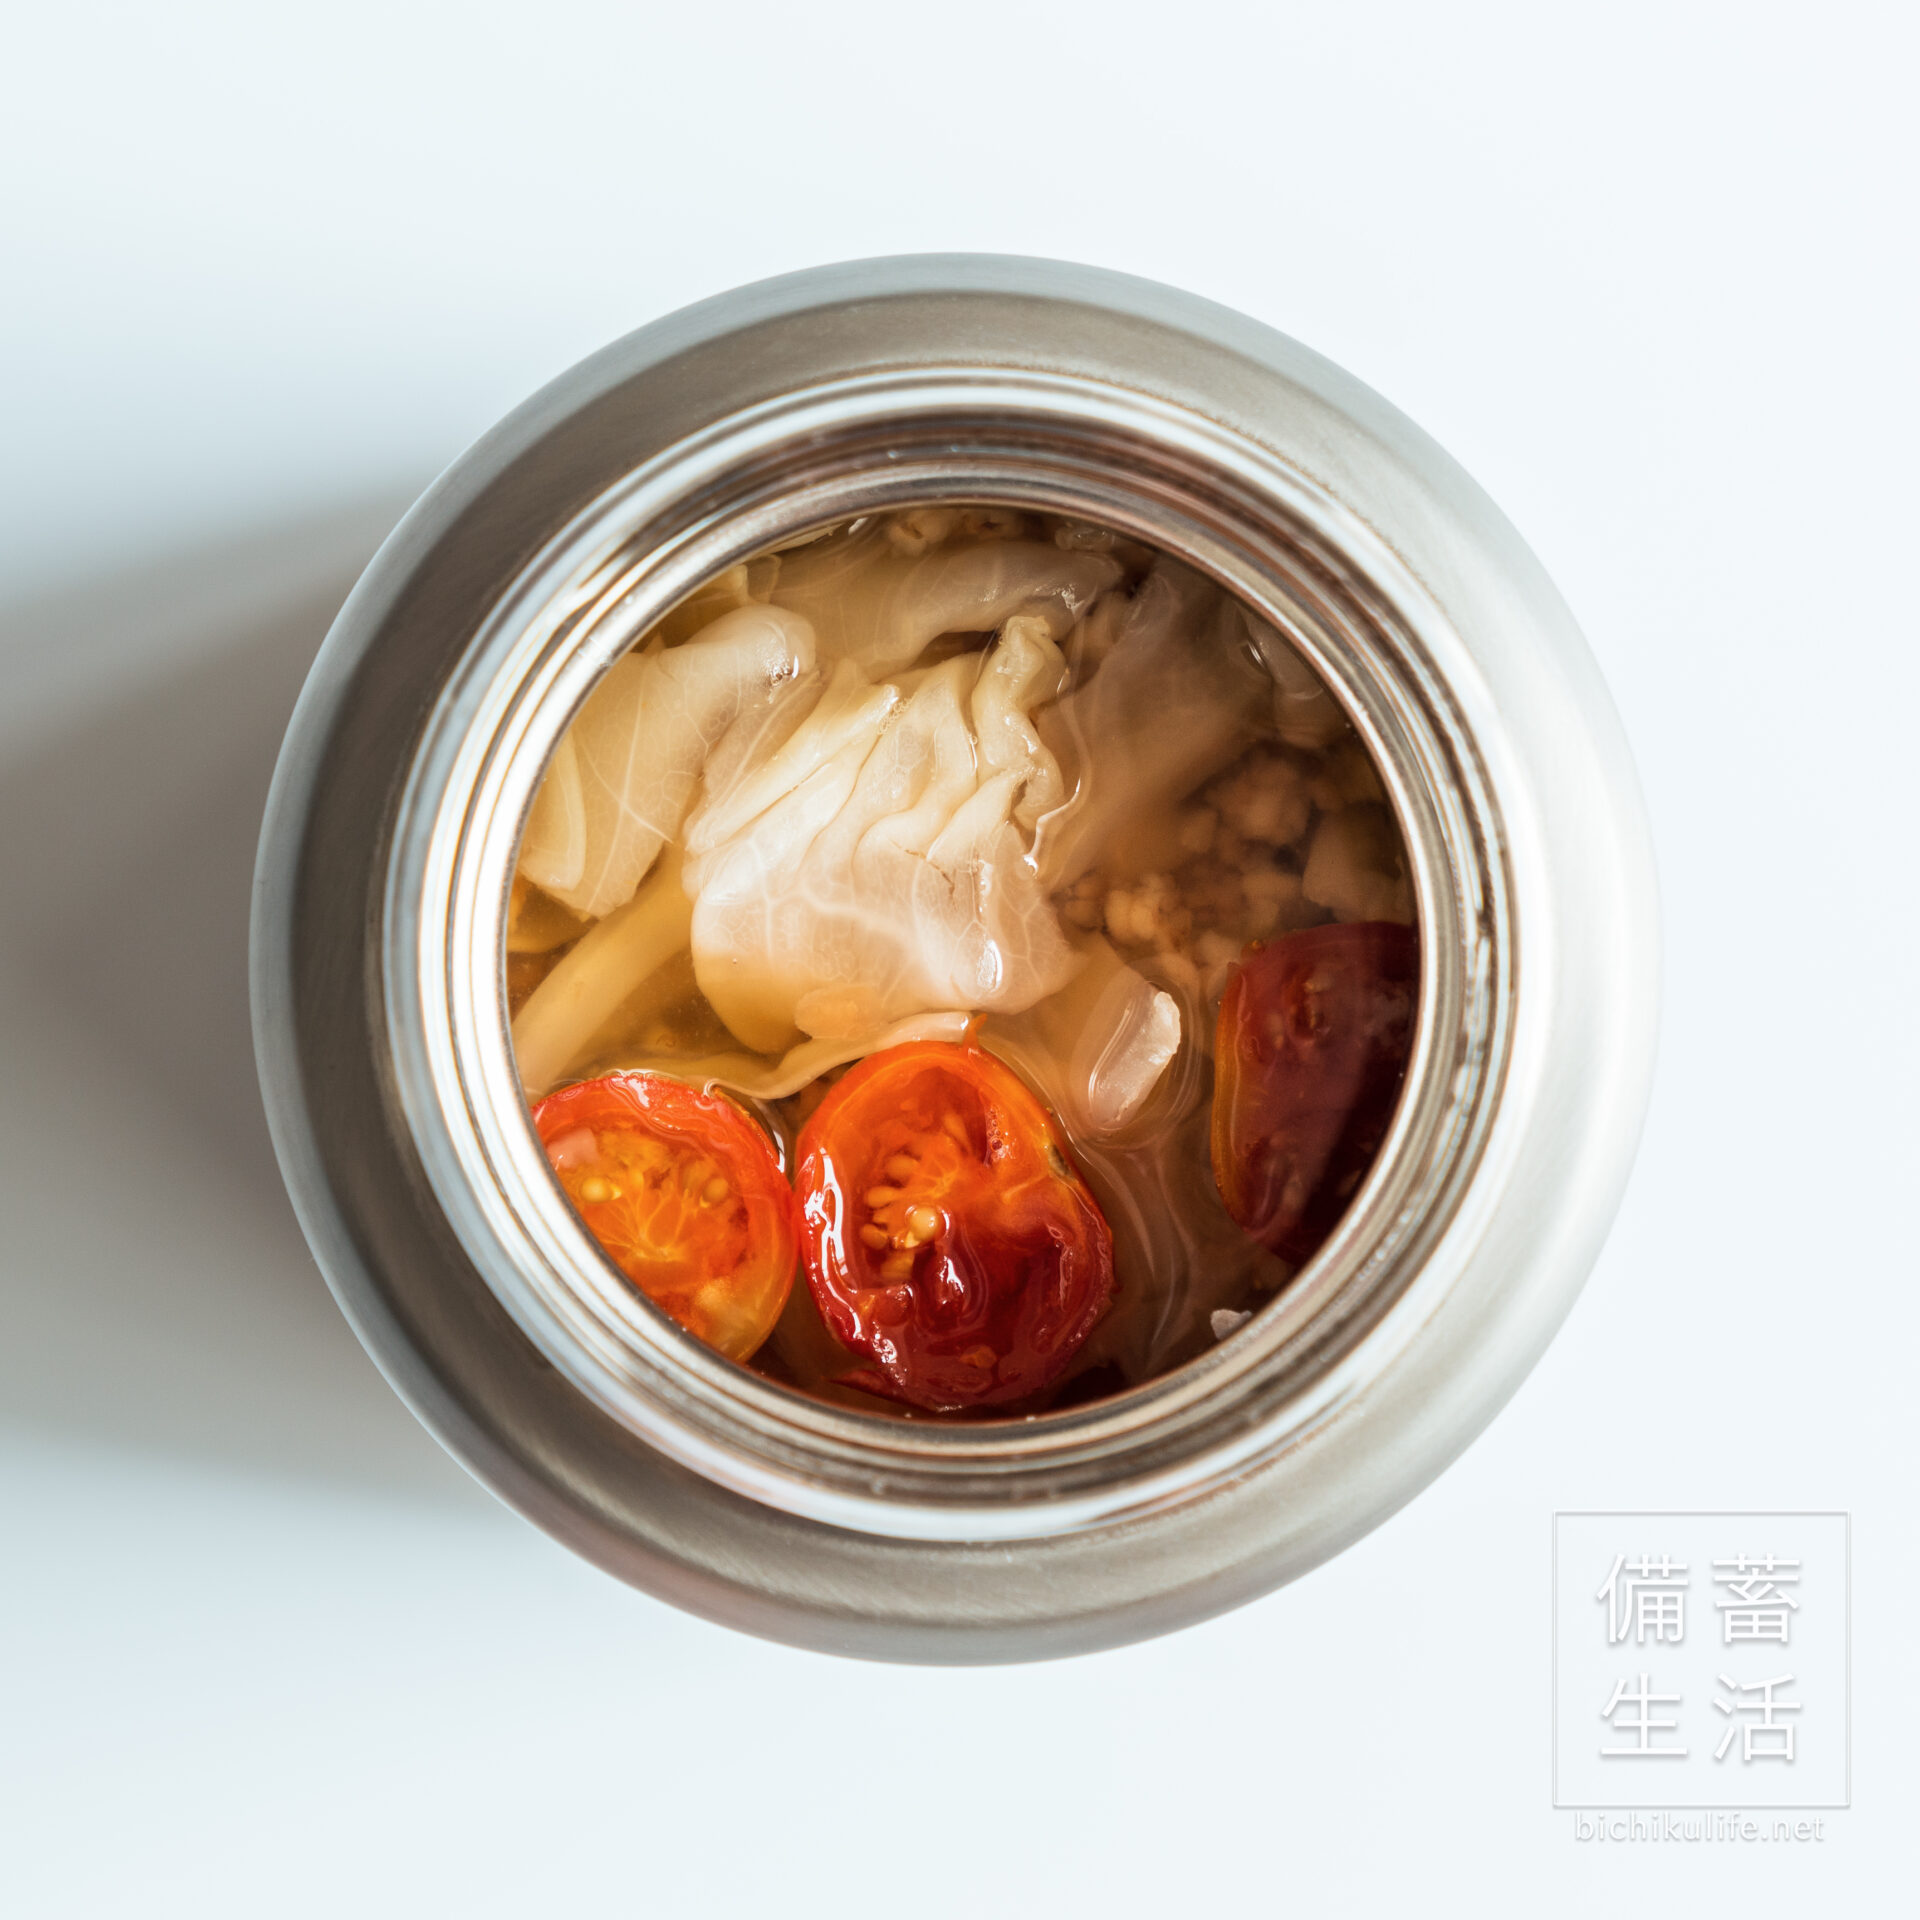 【ドライトマトと野菜コンソメ】炒り玄米スープごはんの作り方・レシピ